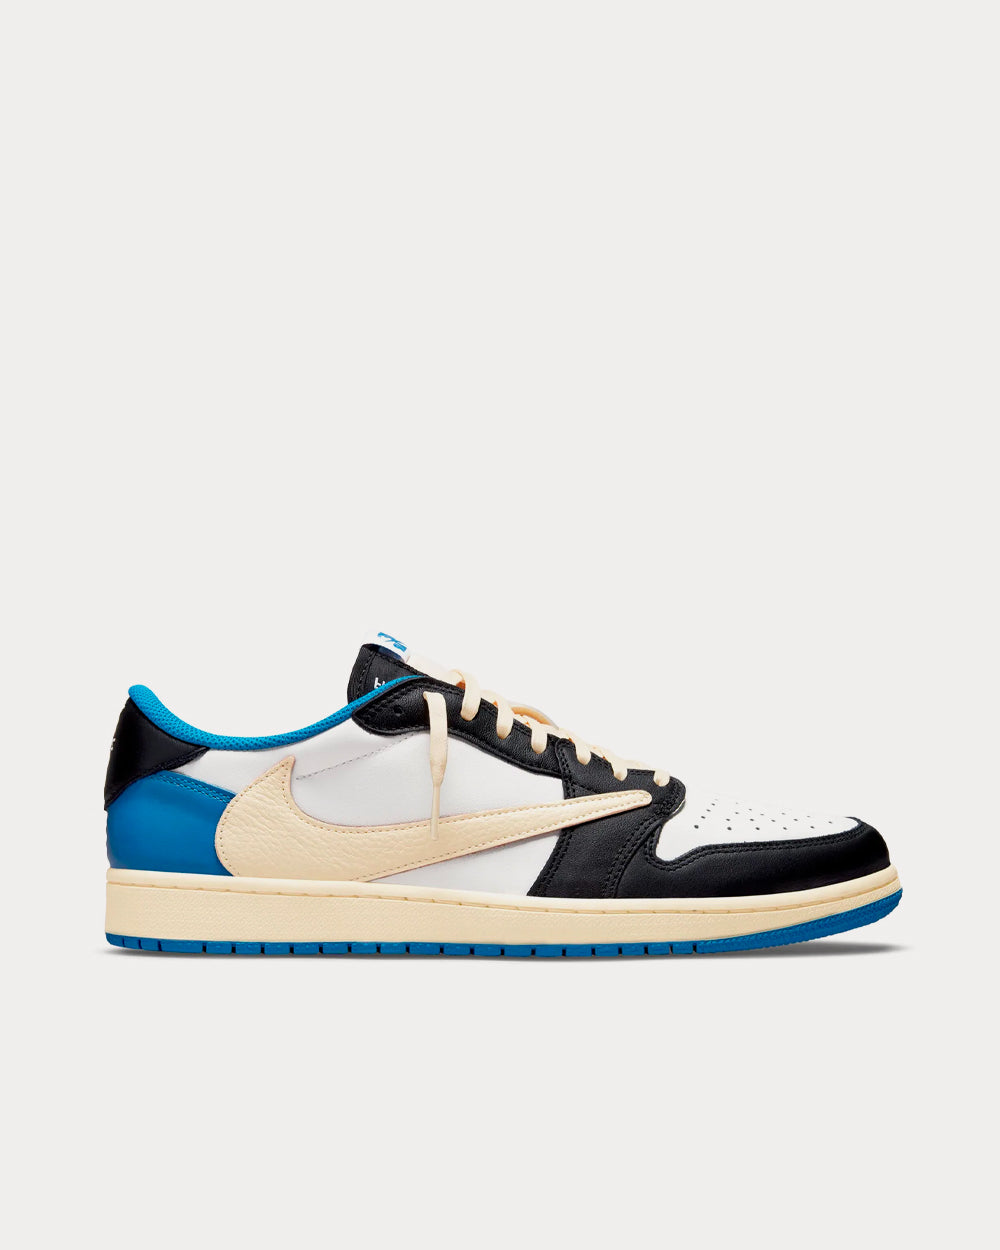 Nike x Travis Scott - x Fragment Design Air Jordan 1 Low OG Sail / Military Blue / Black Low Top Sneakers